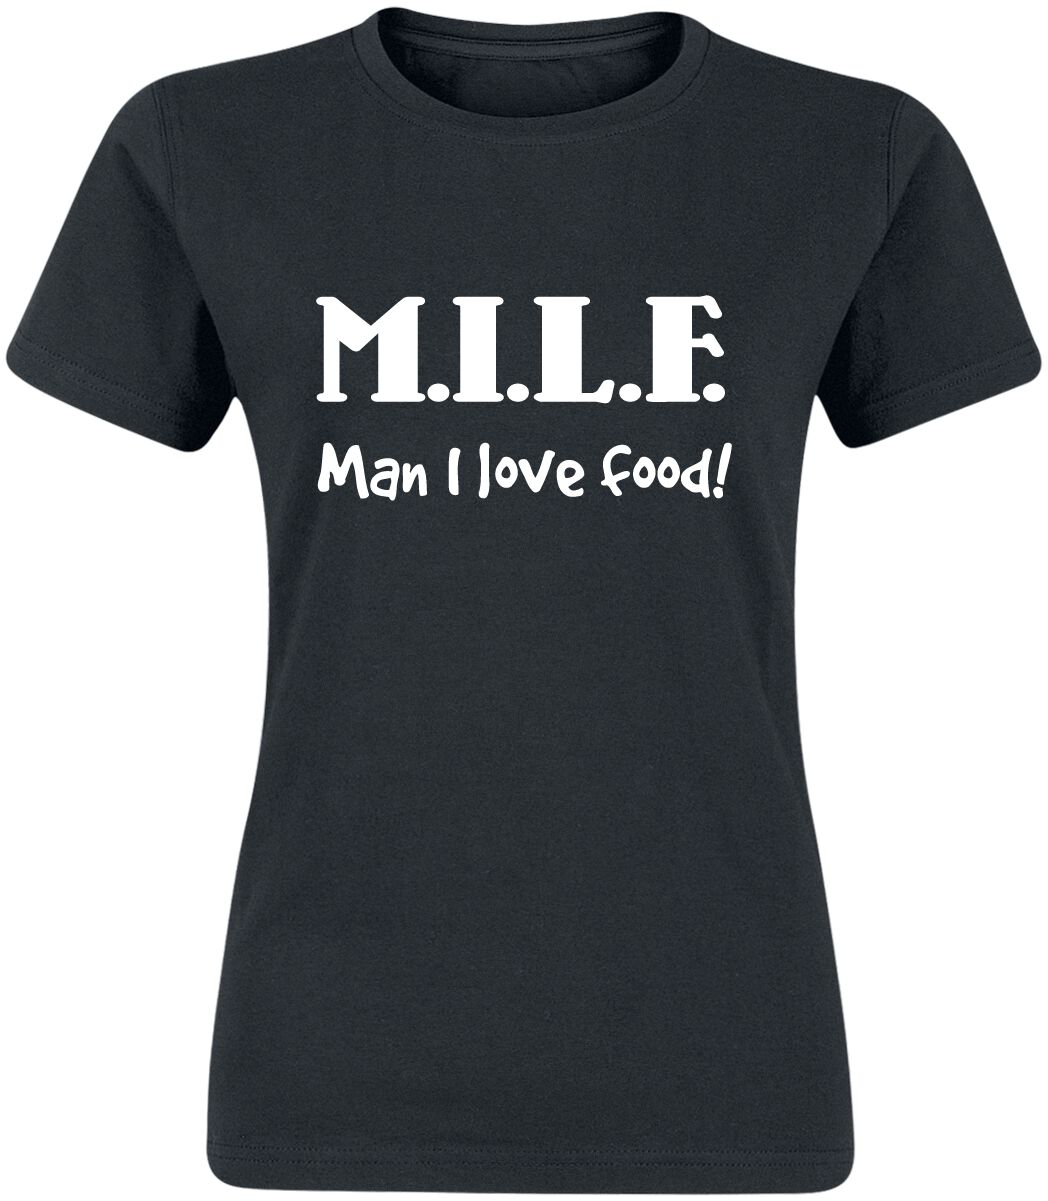 T-Shirt Manches courtes Fun de Food - M.I.L.F. - S à 3XL - pour Femme - noir